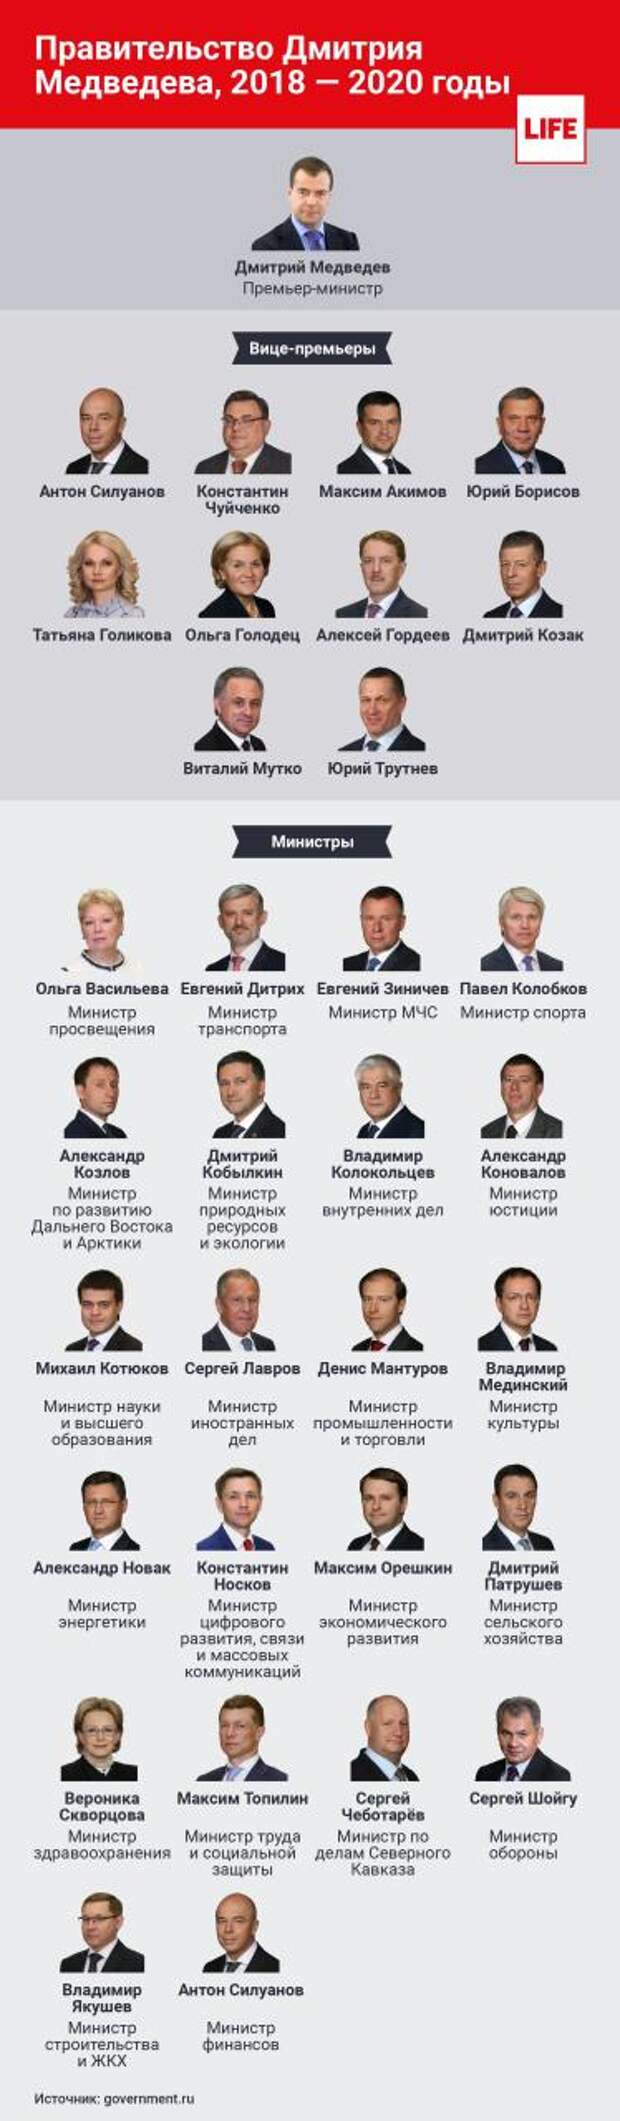 Состав правительства рф на сегодняшний день список с фото фамилии